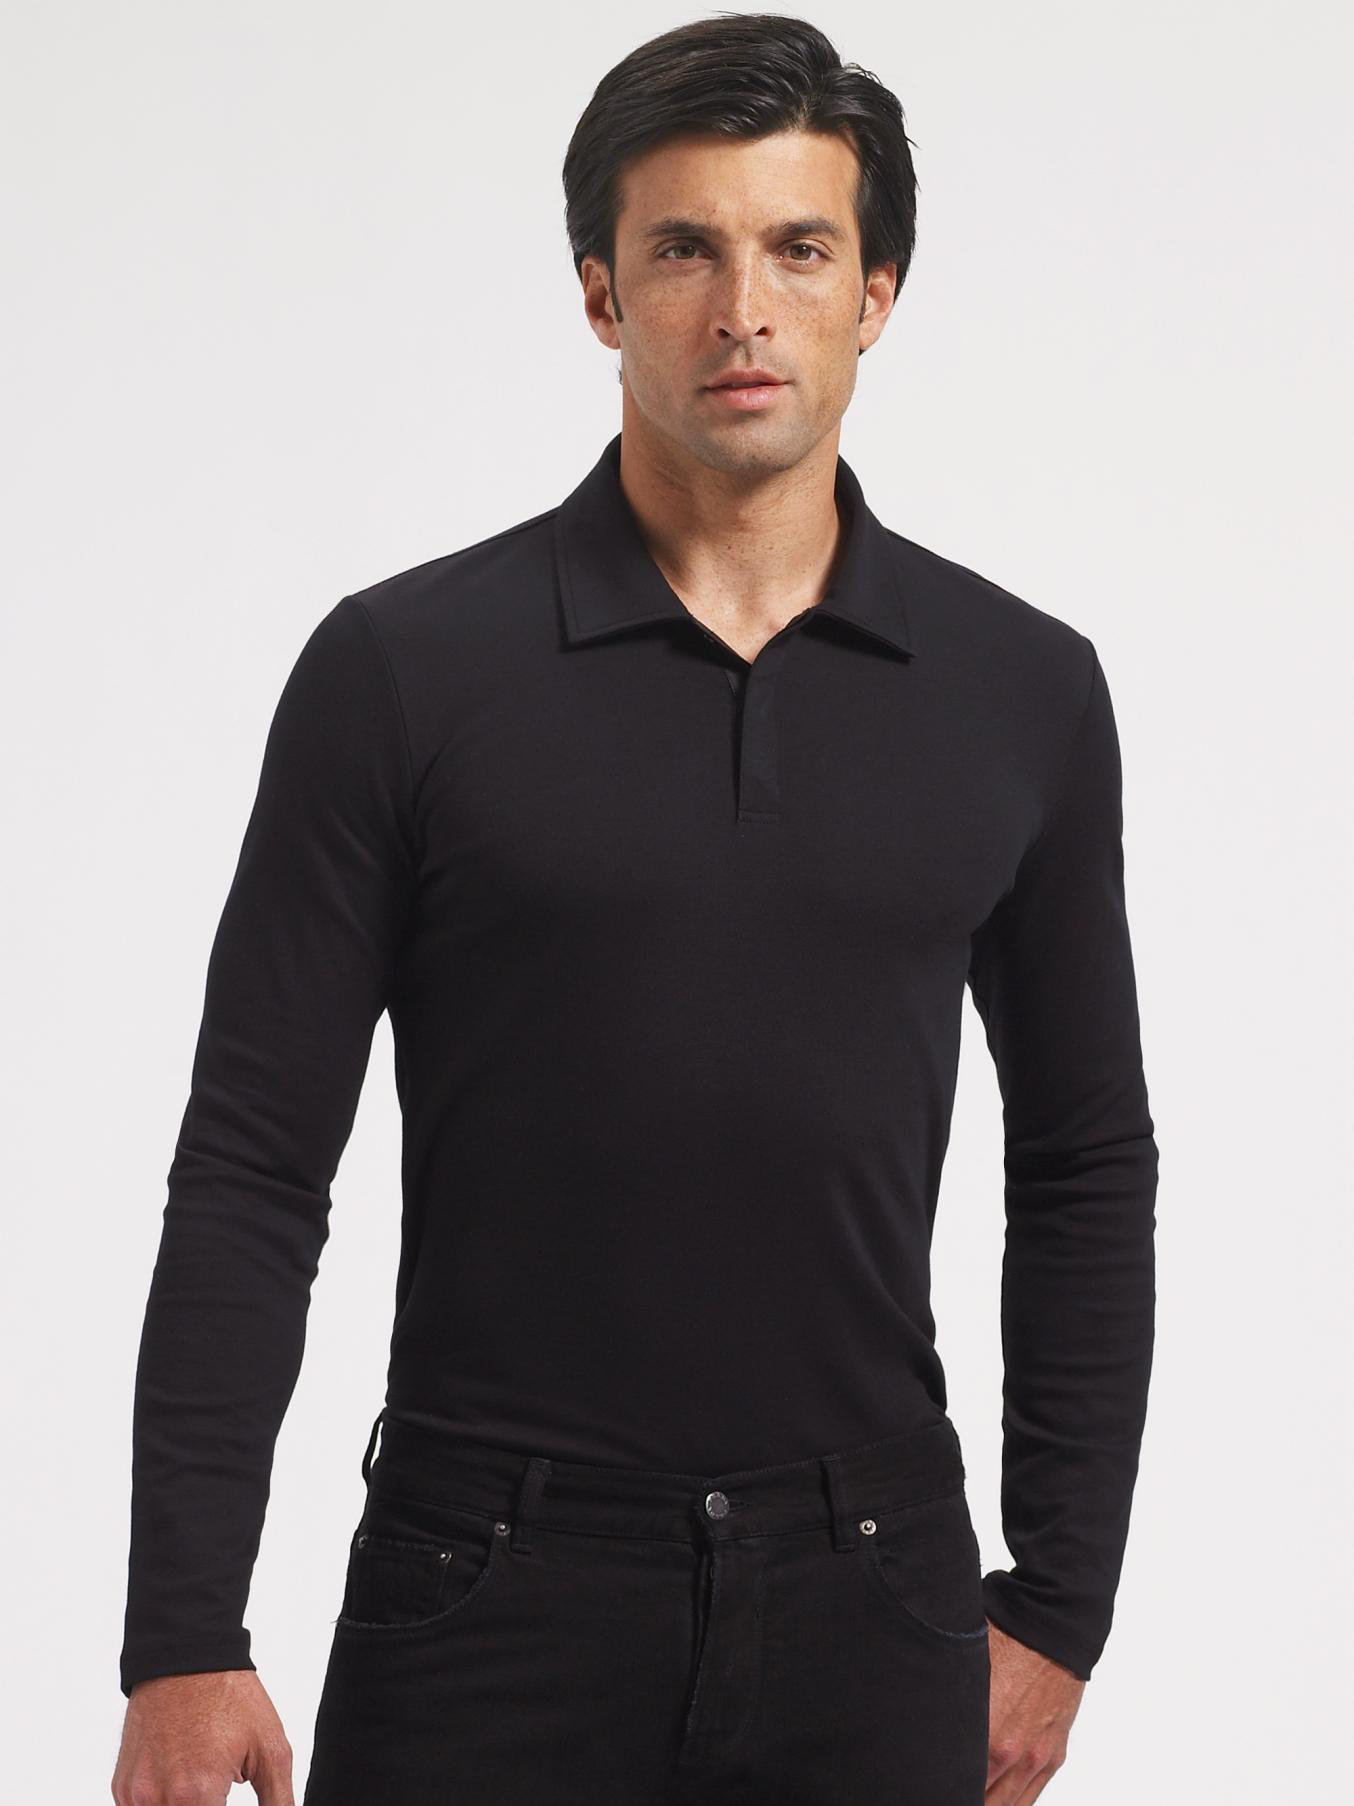 men's black prada polo shirt